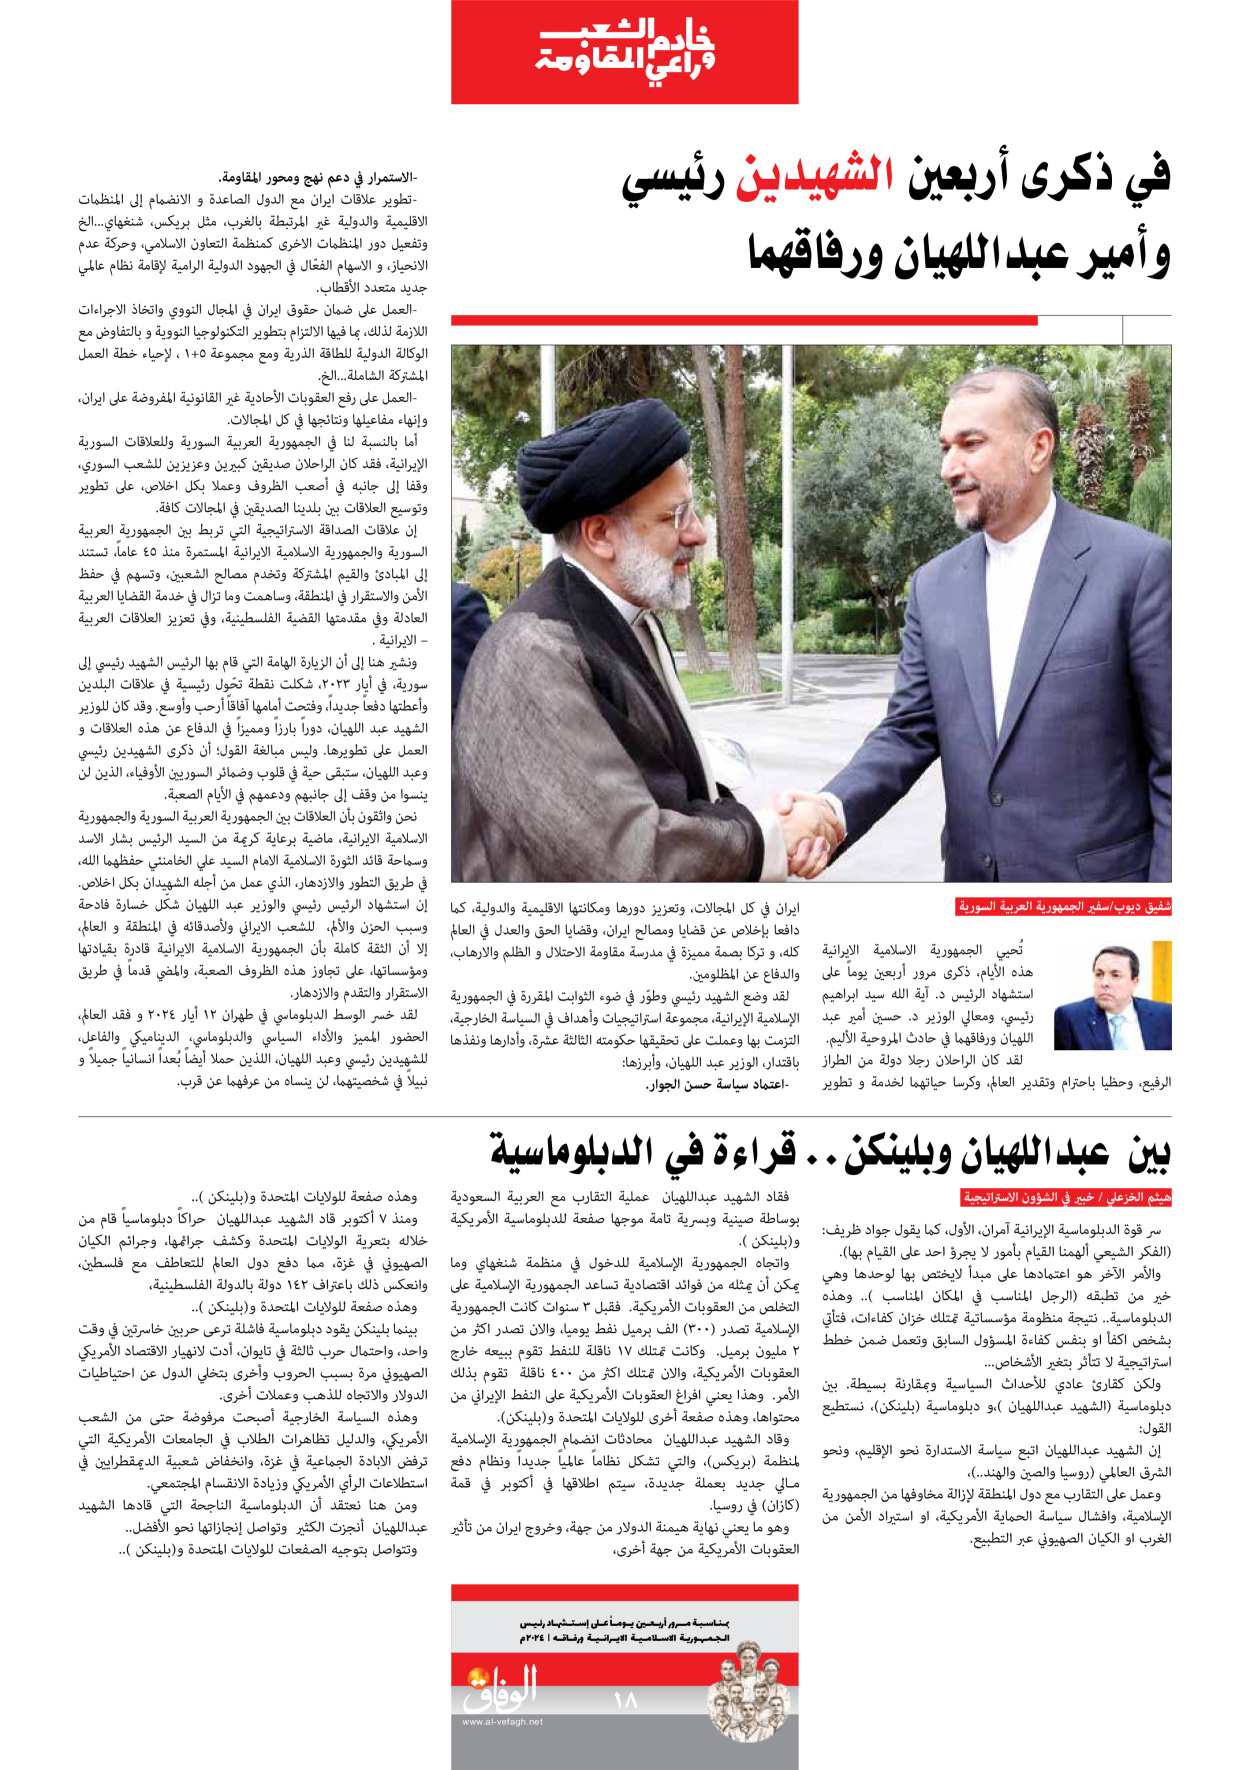 صحیفة ایران الدولیة الوفاق - ملحق ویژه نامه چهلم شهید رییسی - ٢٩ يونيو ٢٠٢٤ - الصفحة ۱۸